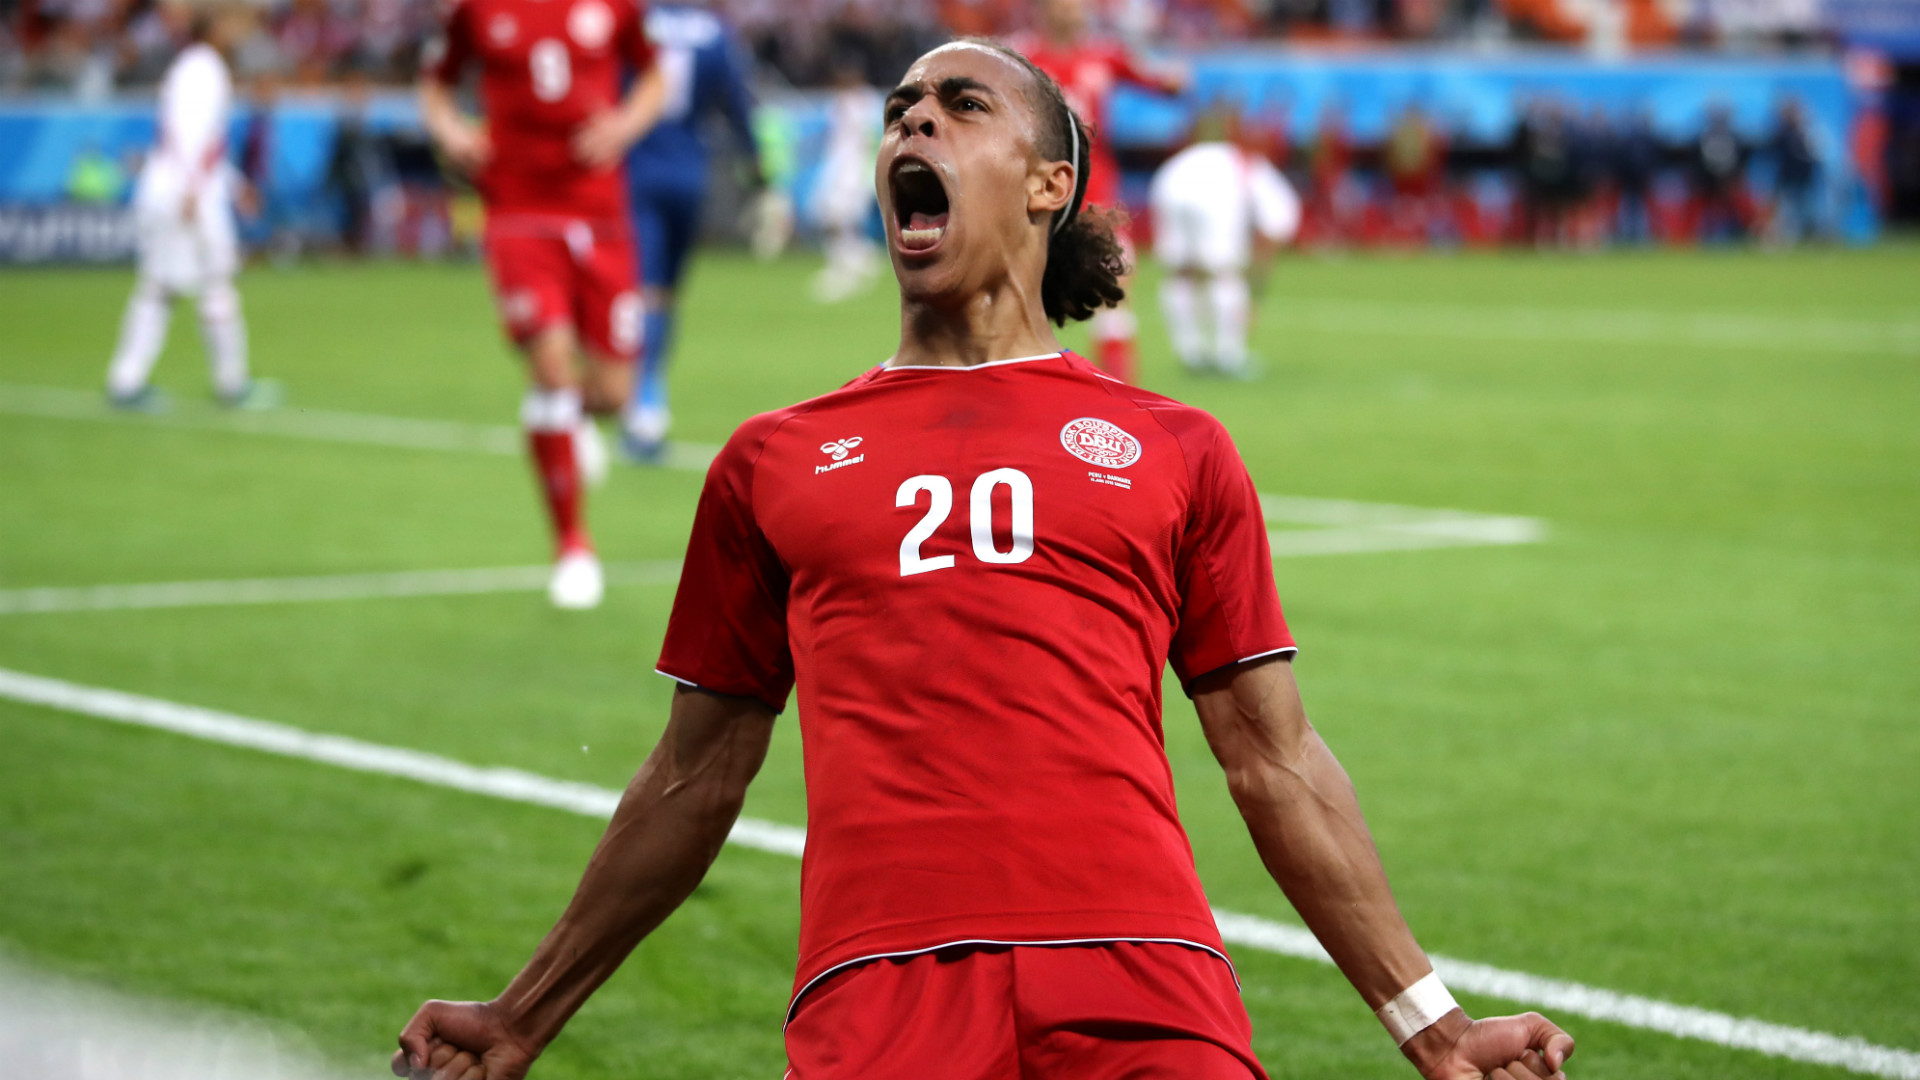 Mondiali, girone C: la Danimarca non sbaglia e aggancia la Francia in vetta, 1-0 su un ottimo Perù